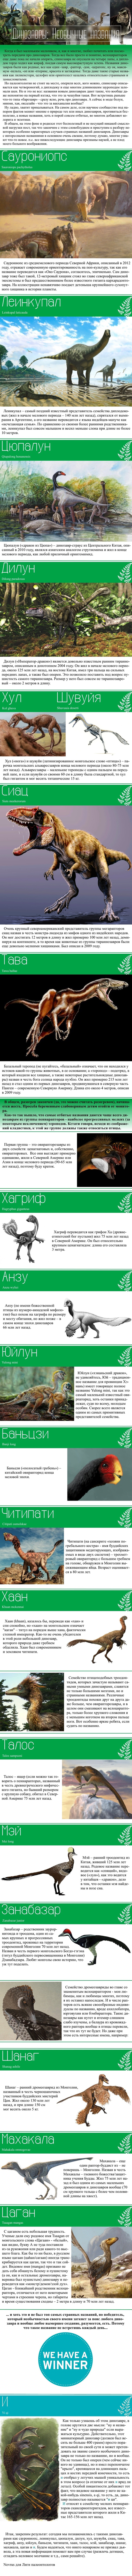 Динозавры: Необычные названия динозавры, палеонтология, интересное, необычное, длиннопост